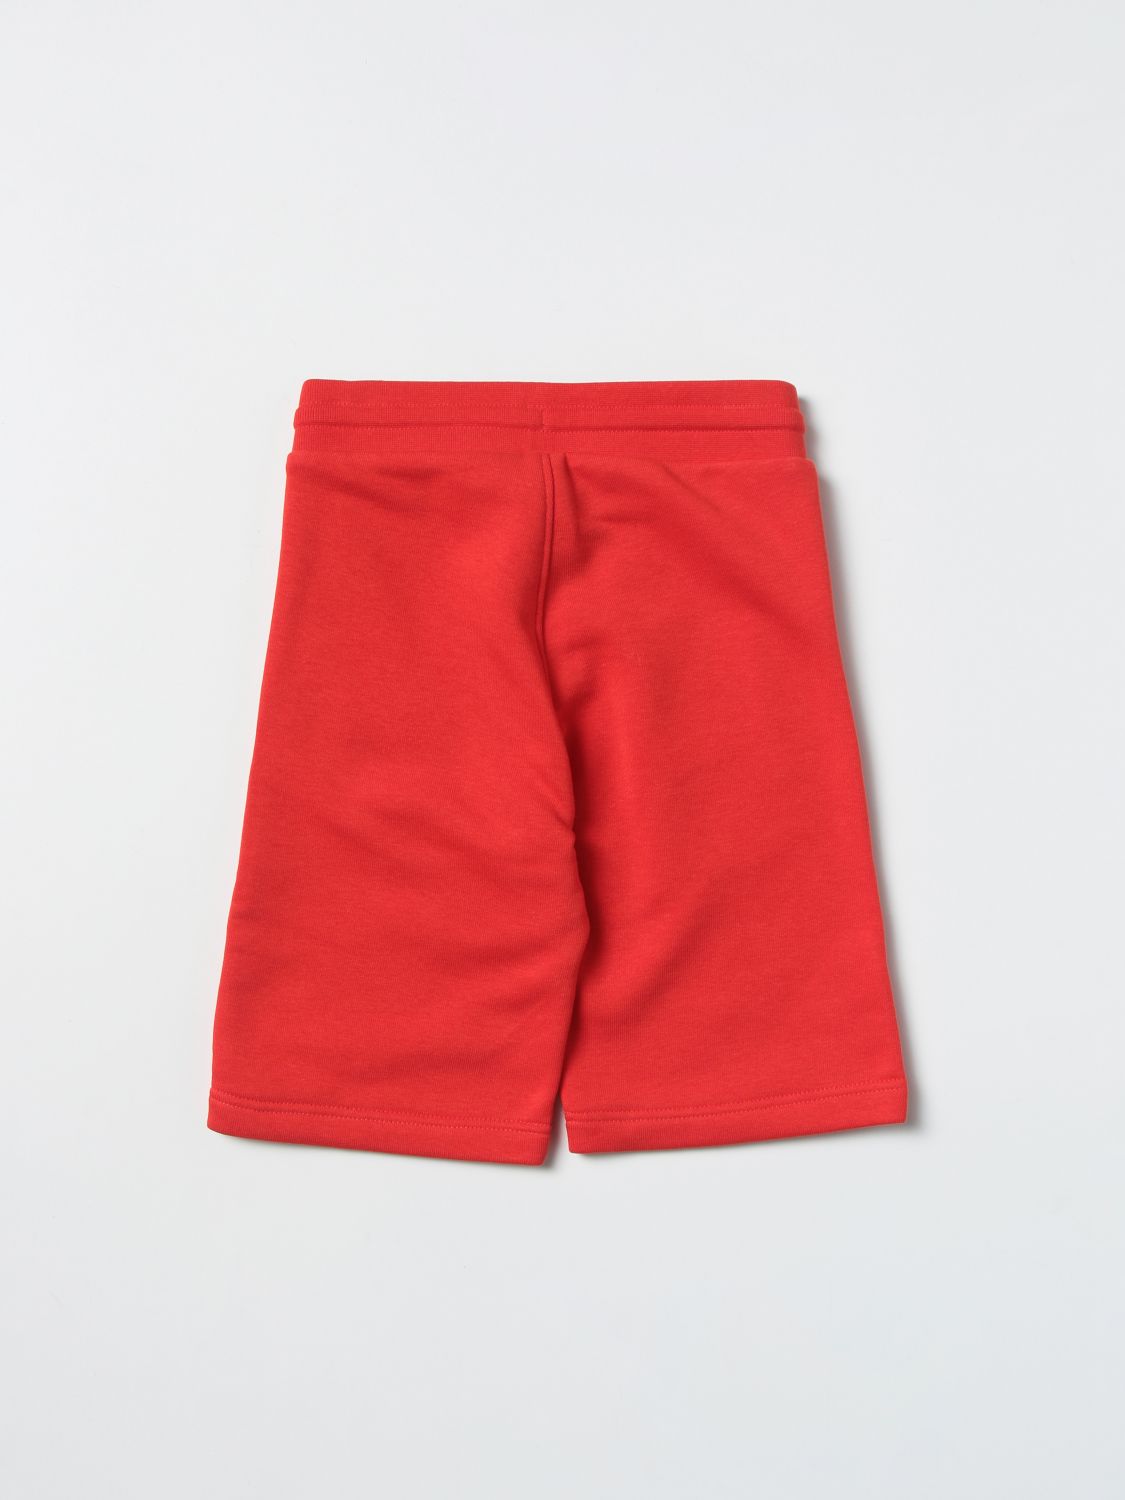 Shorts Hugo Boss: Hugo Boss shorts for boy red 2